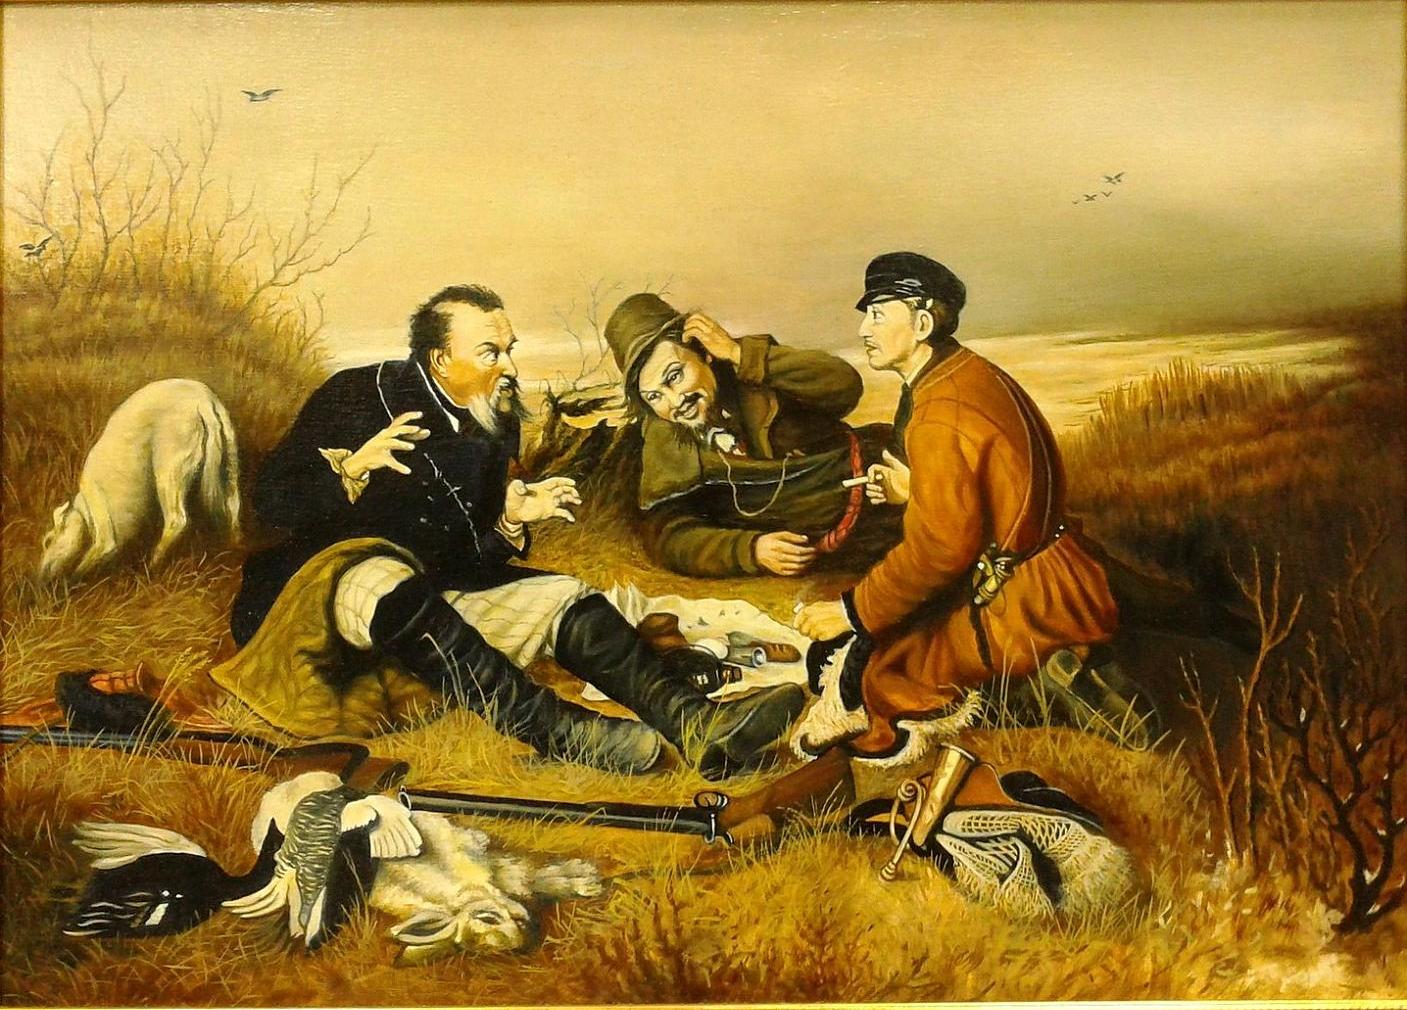 Сколько есть сюжеты. «Охотники на привале», в.г.Перов, 1871. Охотники на привале картина Перова.